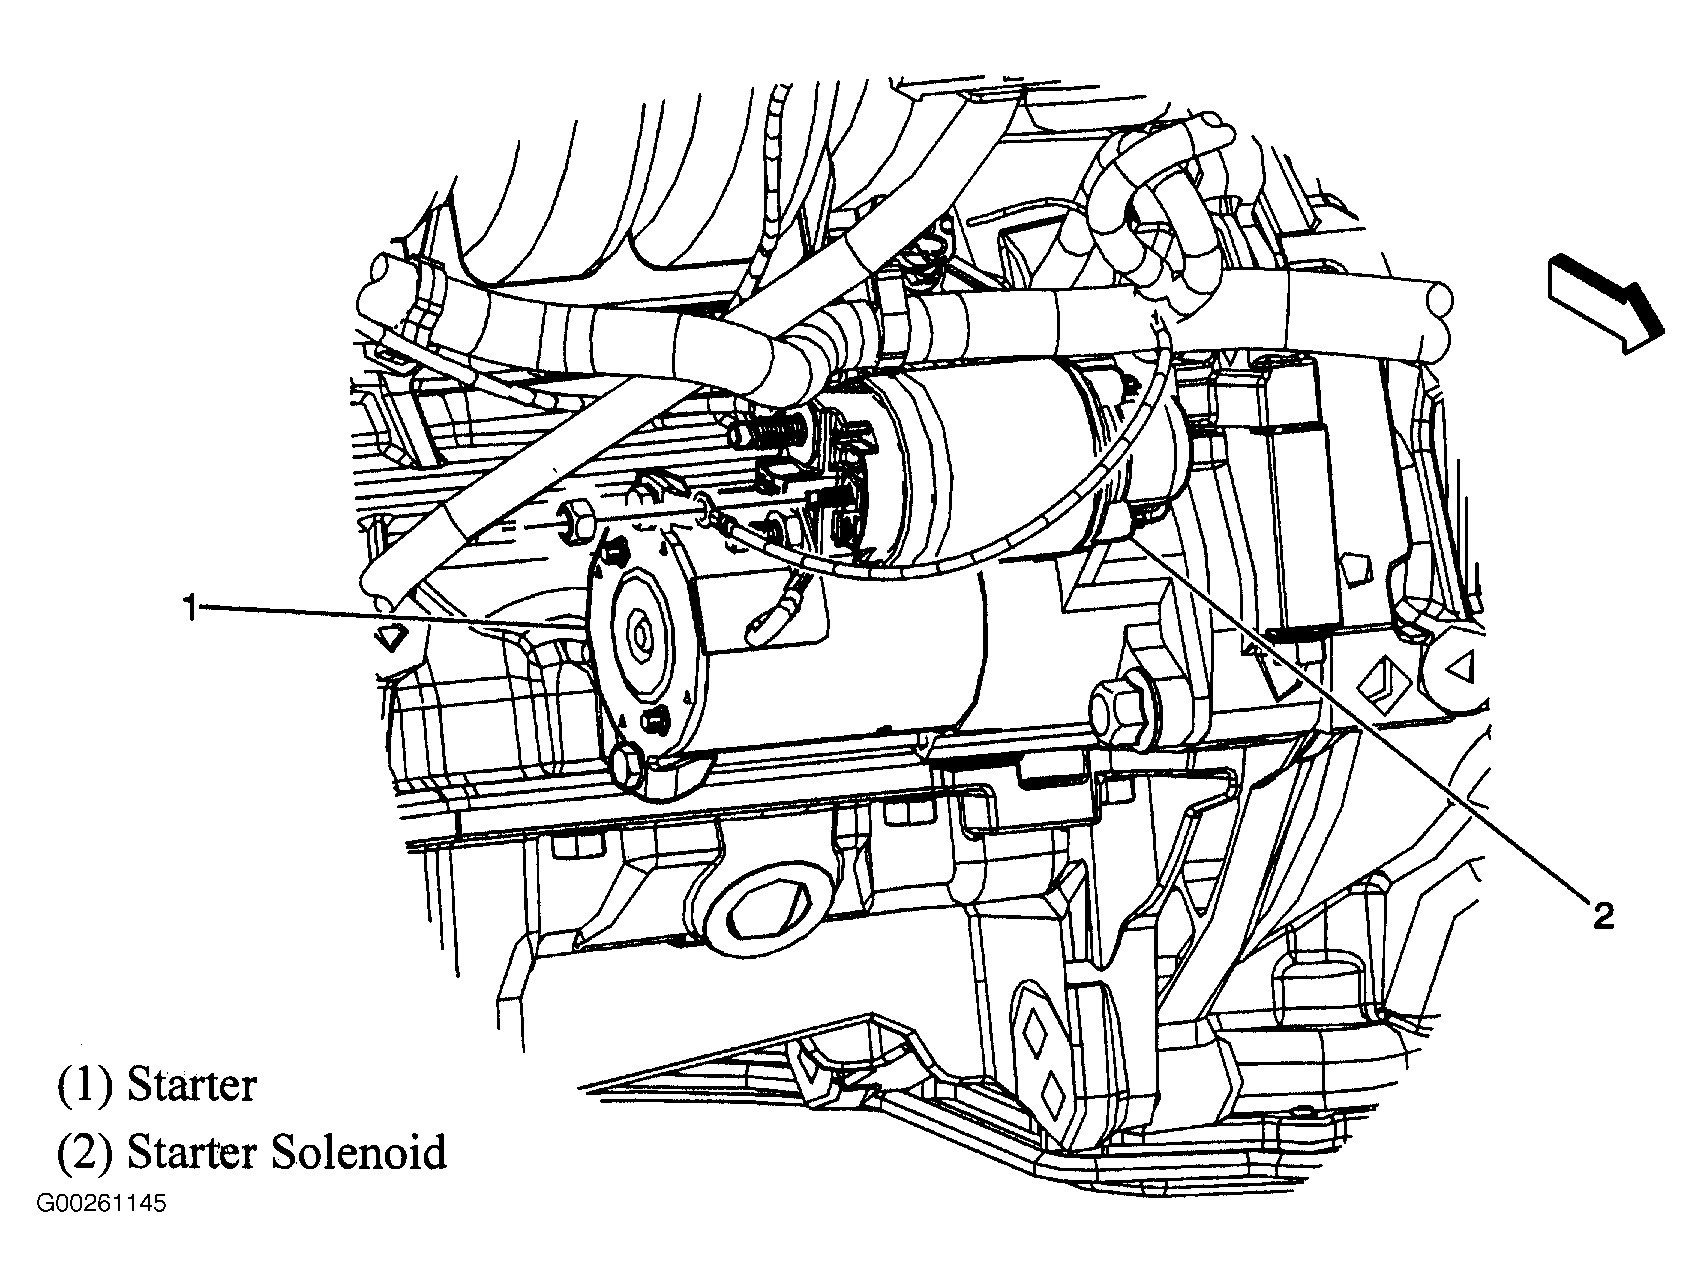 2008 Chevy Malibu Engine Diagram | My Wiring DIagram